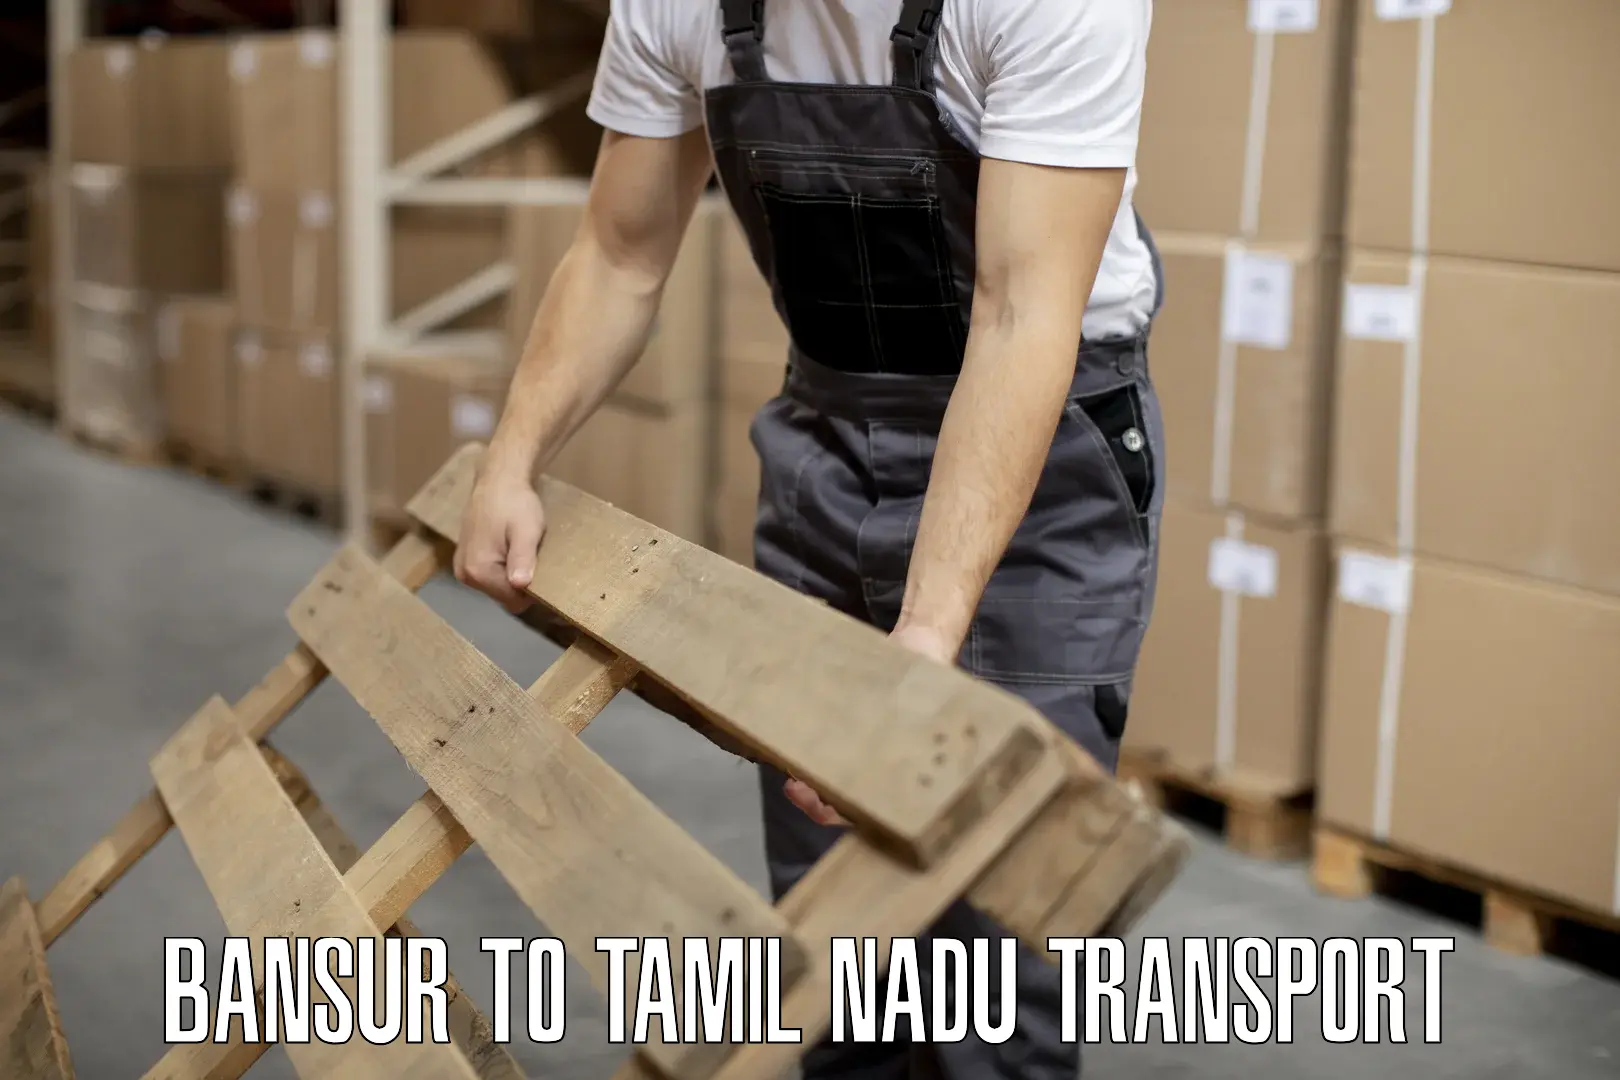 Pick up transport service Bansur to Tamil Nadu